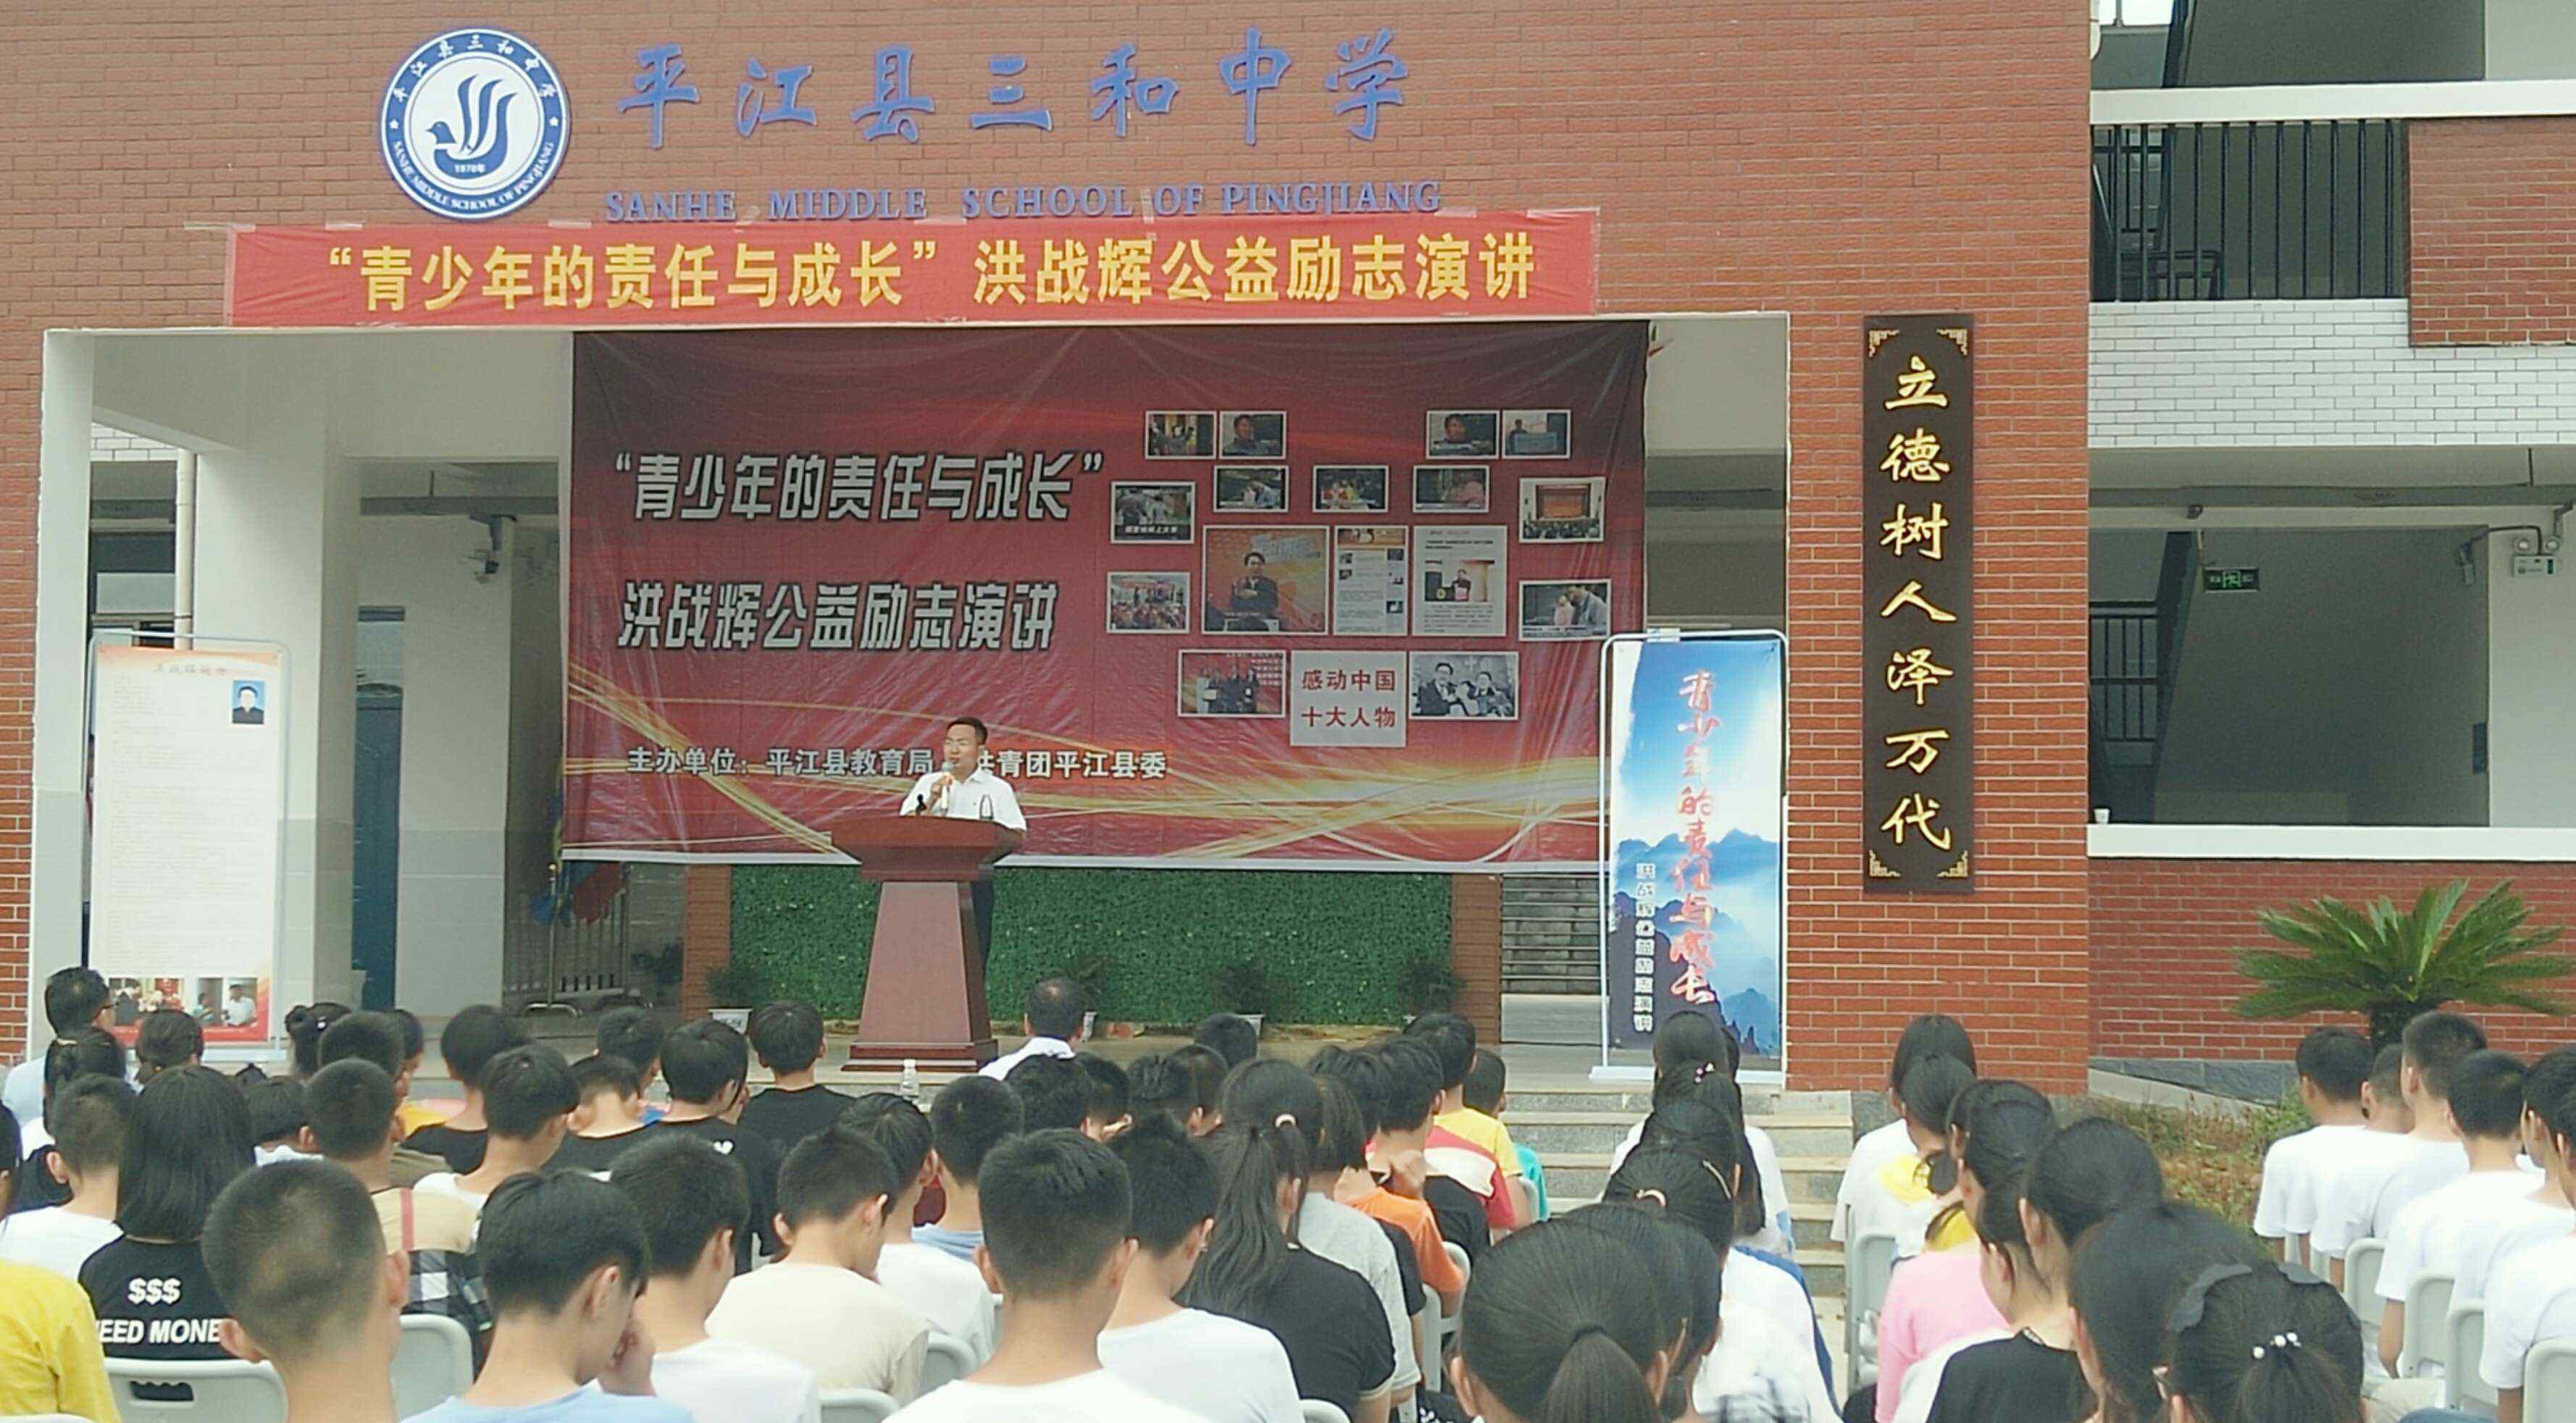 洪战辉 感动中国十大人物洪战辉在平江县三和中学的公益励志演讲